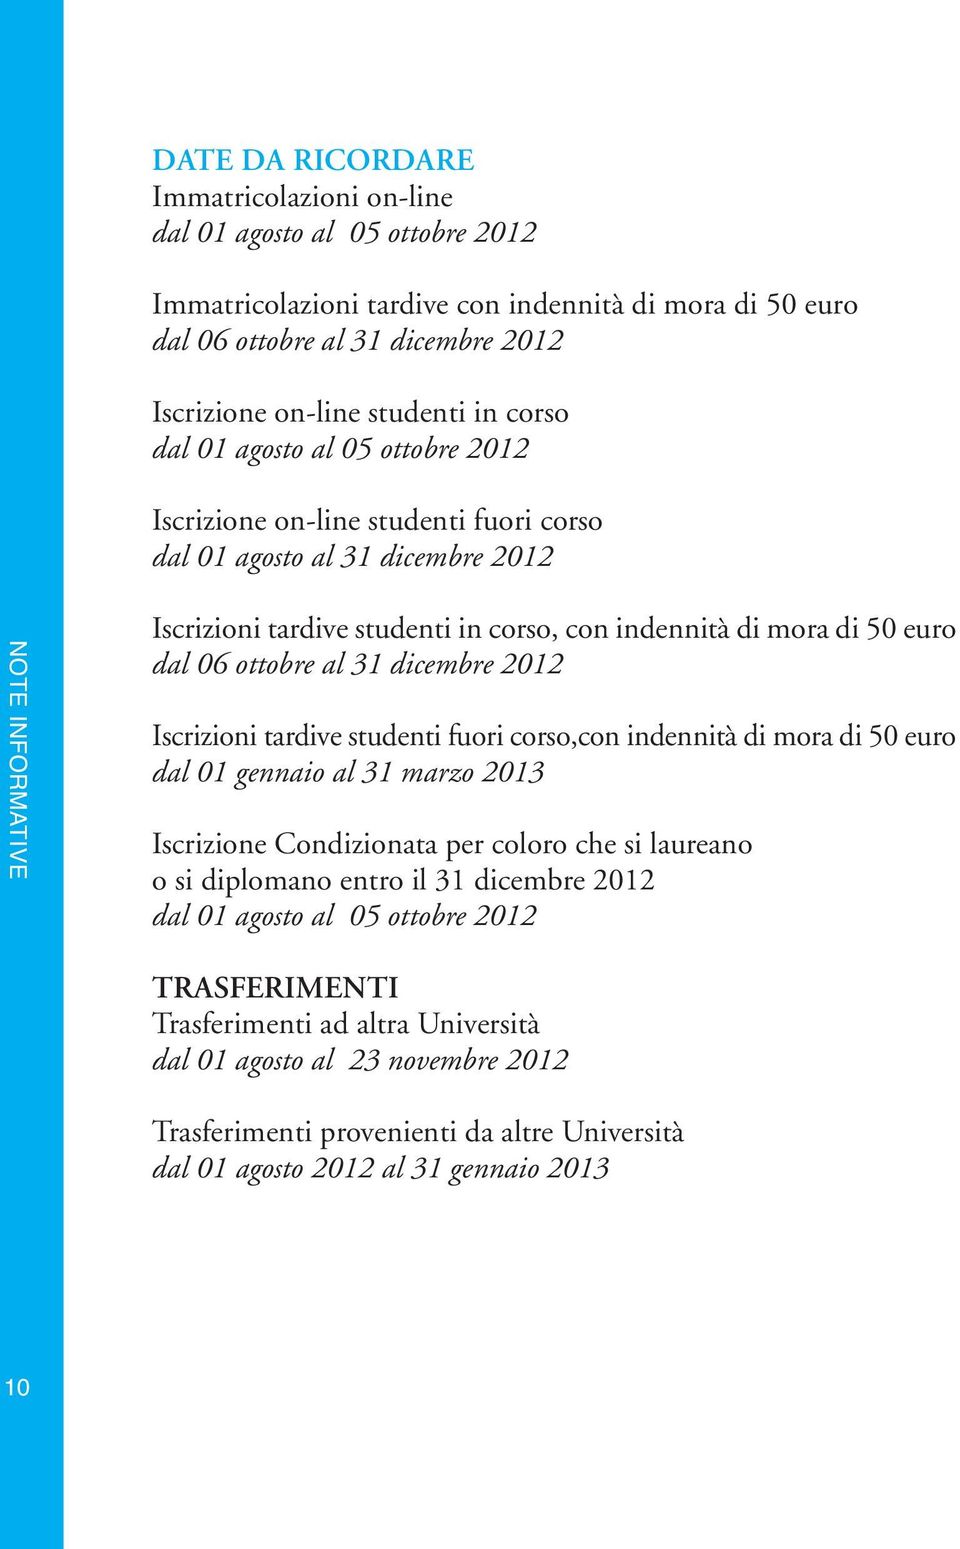 Iscrizioni tardive studenti fuori corso,con indennità di mora di 50 euro dal 01 gennaio al 31 marzo 2013 Iscrizione Condizionata per coloro che si laureano o si diplomano entro il